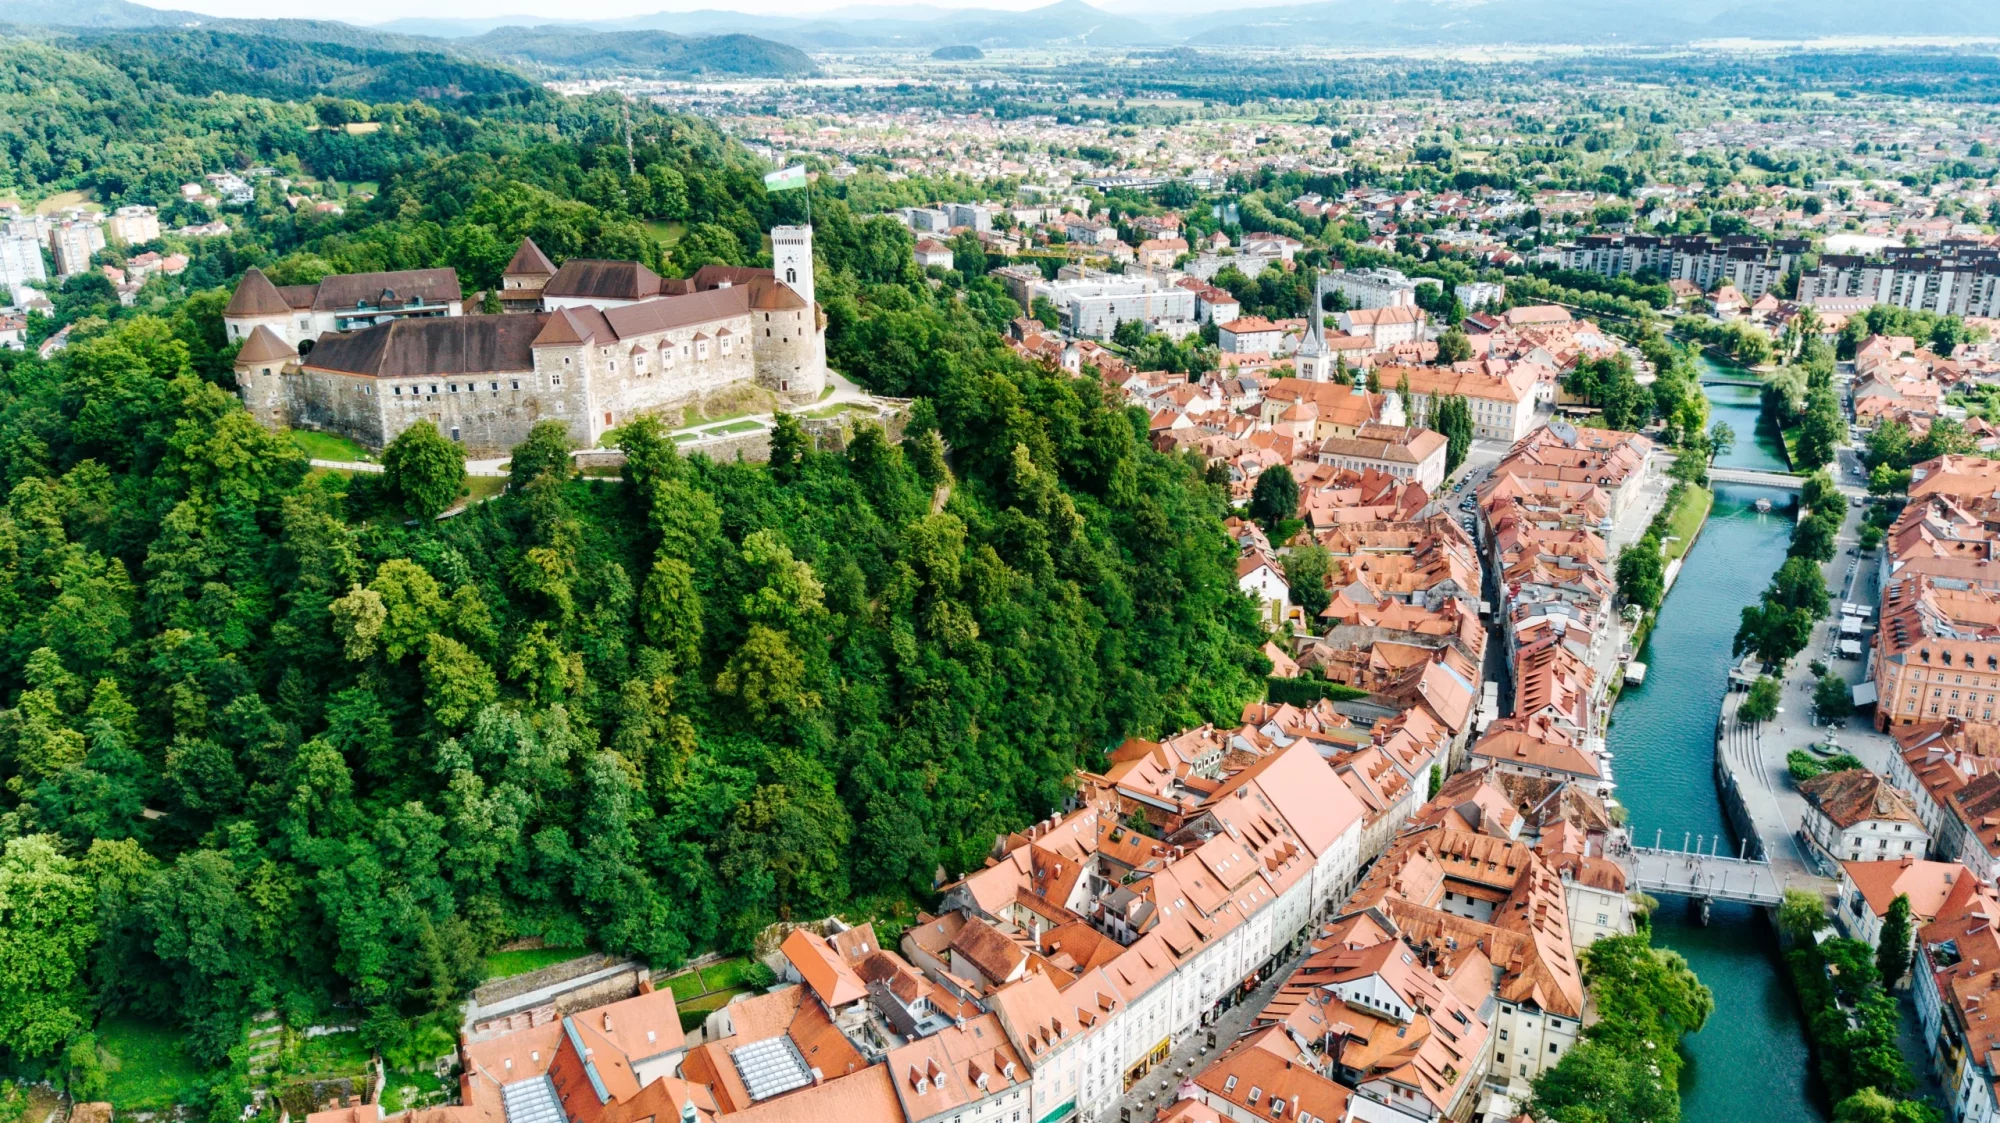 Ljubljana ja linna skaalattuna